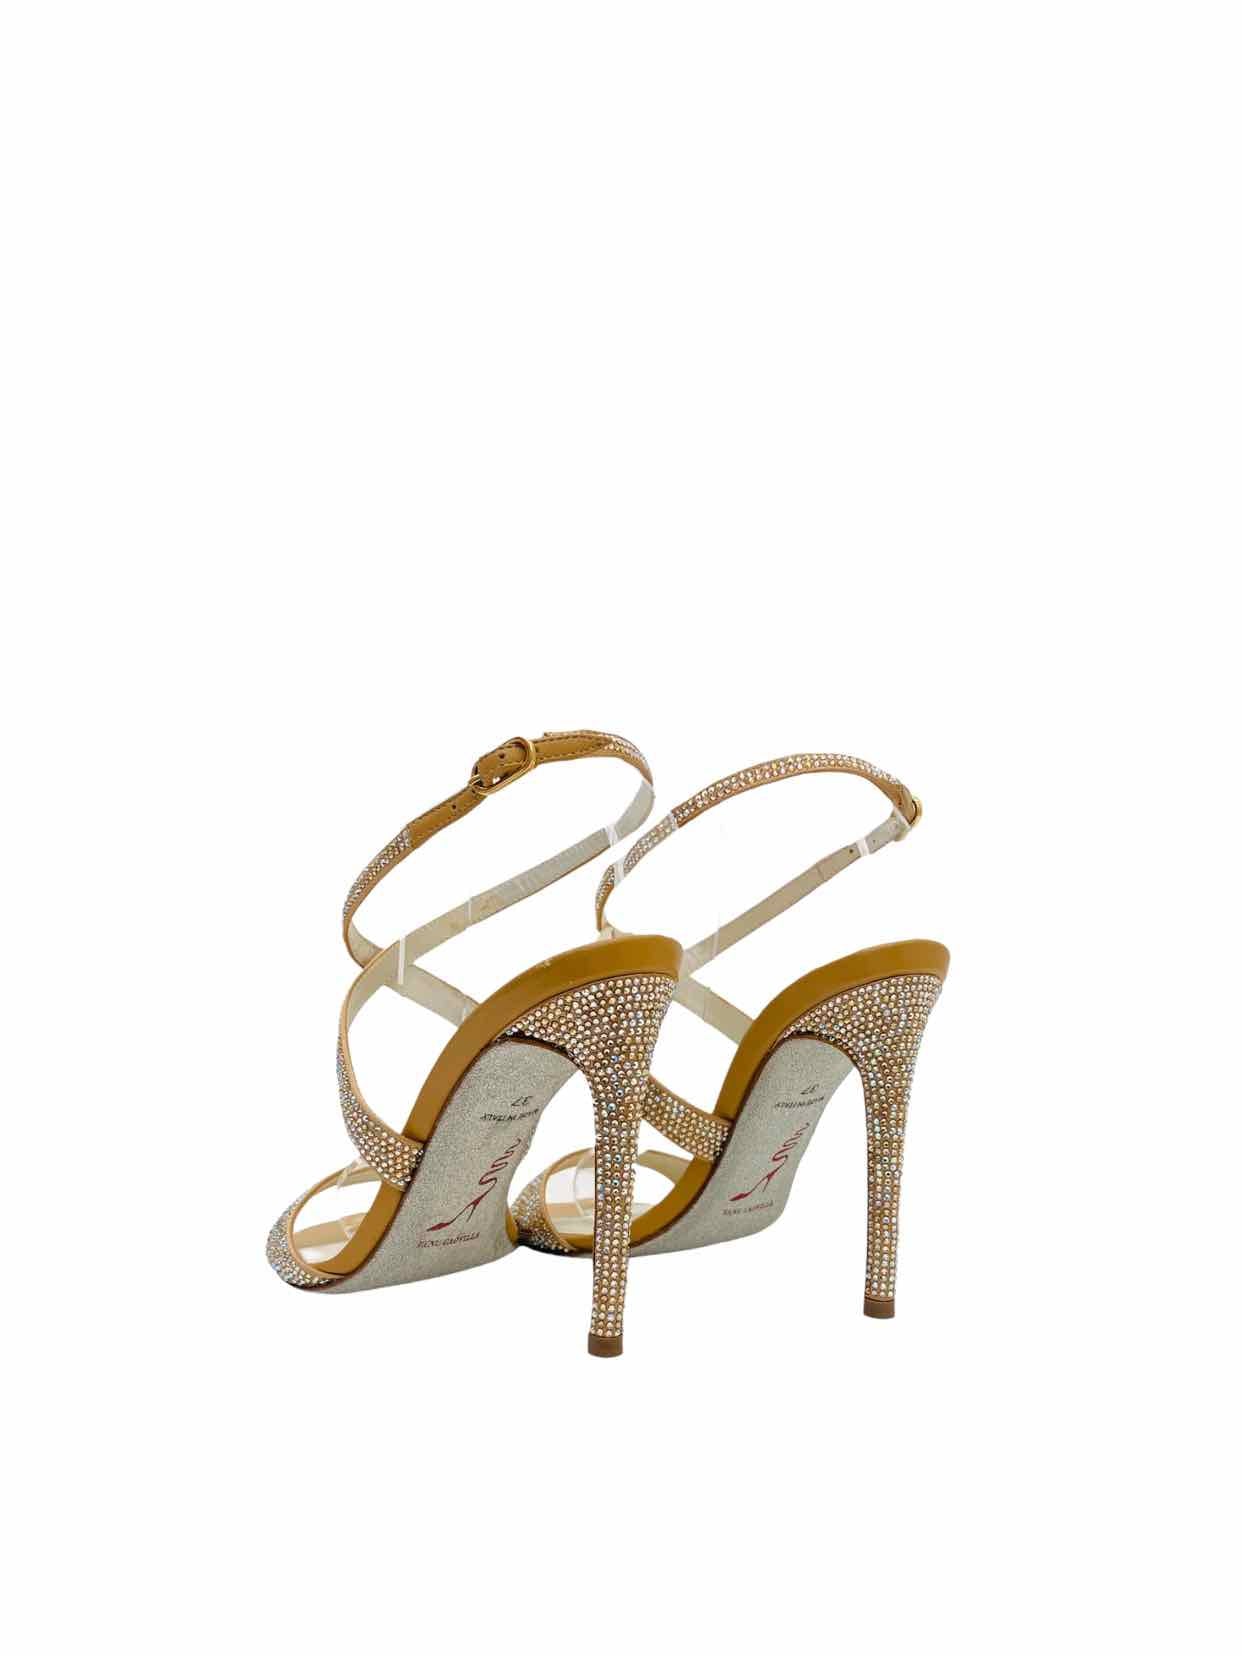 RENE CAOVILLA Beige Embellished Heeled Sandals